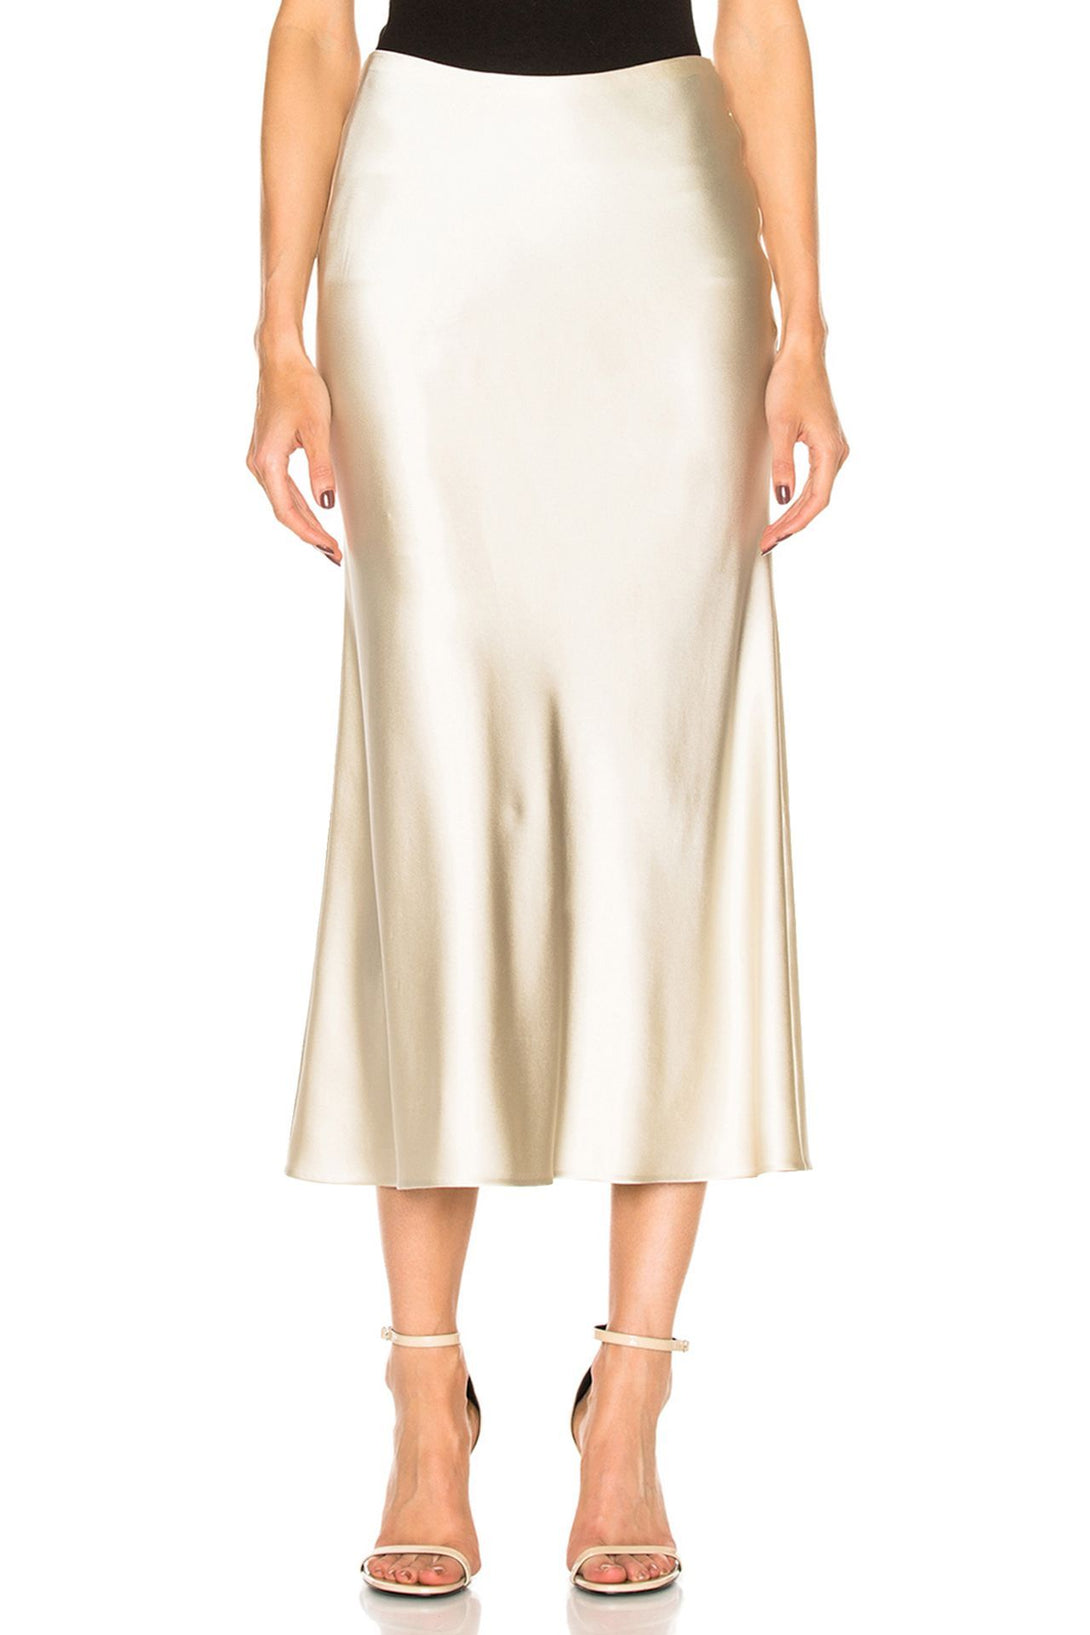 Designer-Silk-Skirt-In-White-For-Womens-By-Kyle-Richard